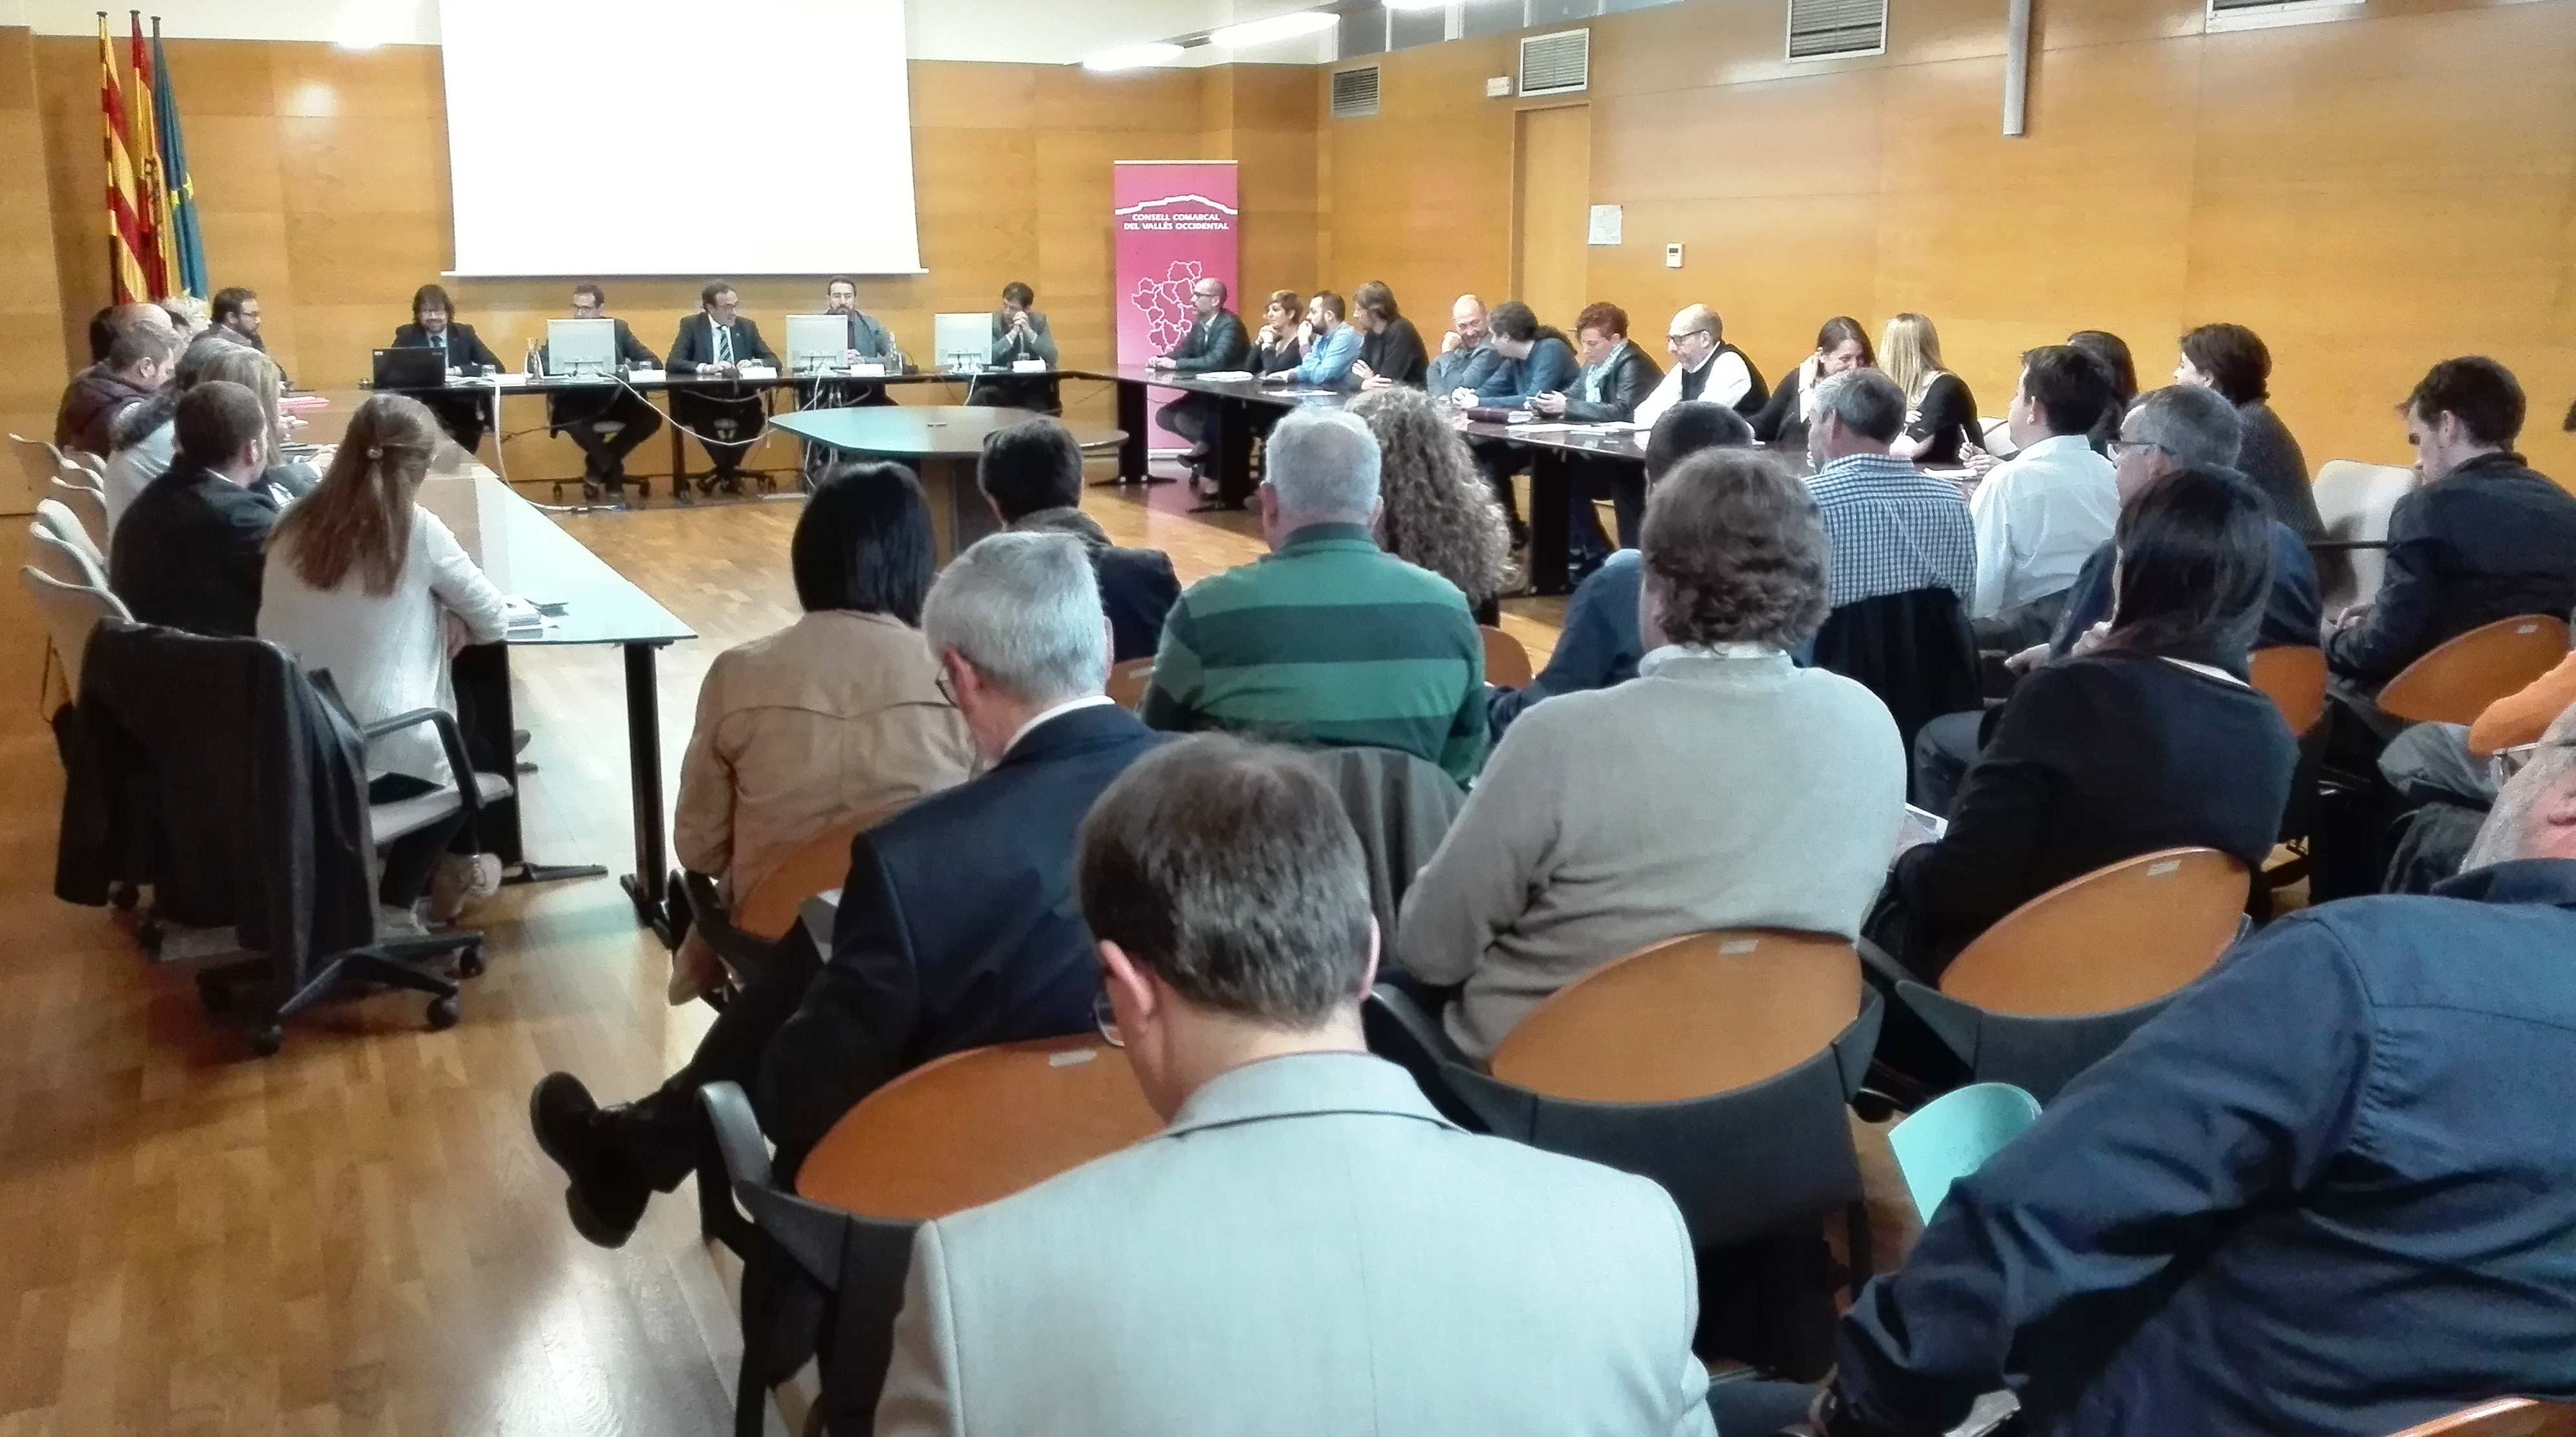 La trobada d'aquest divendres a la seu del Consell Comarcal del Vallès Occidental